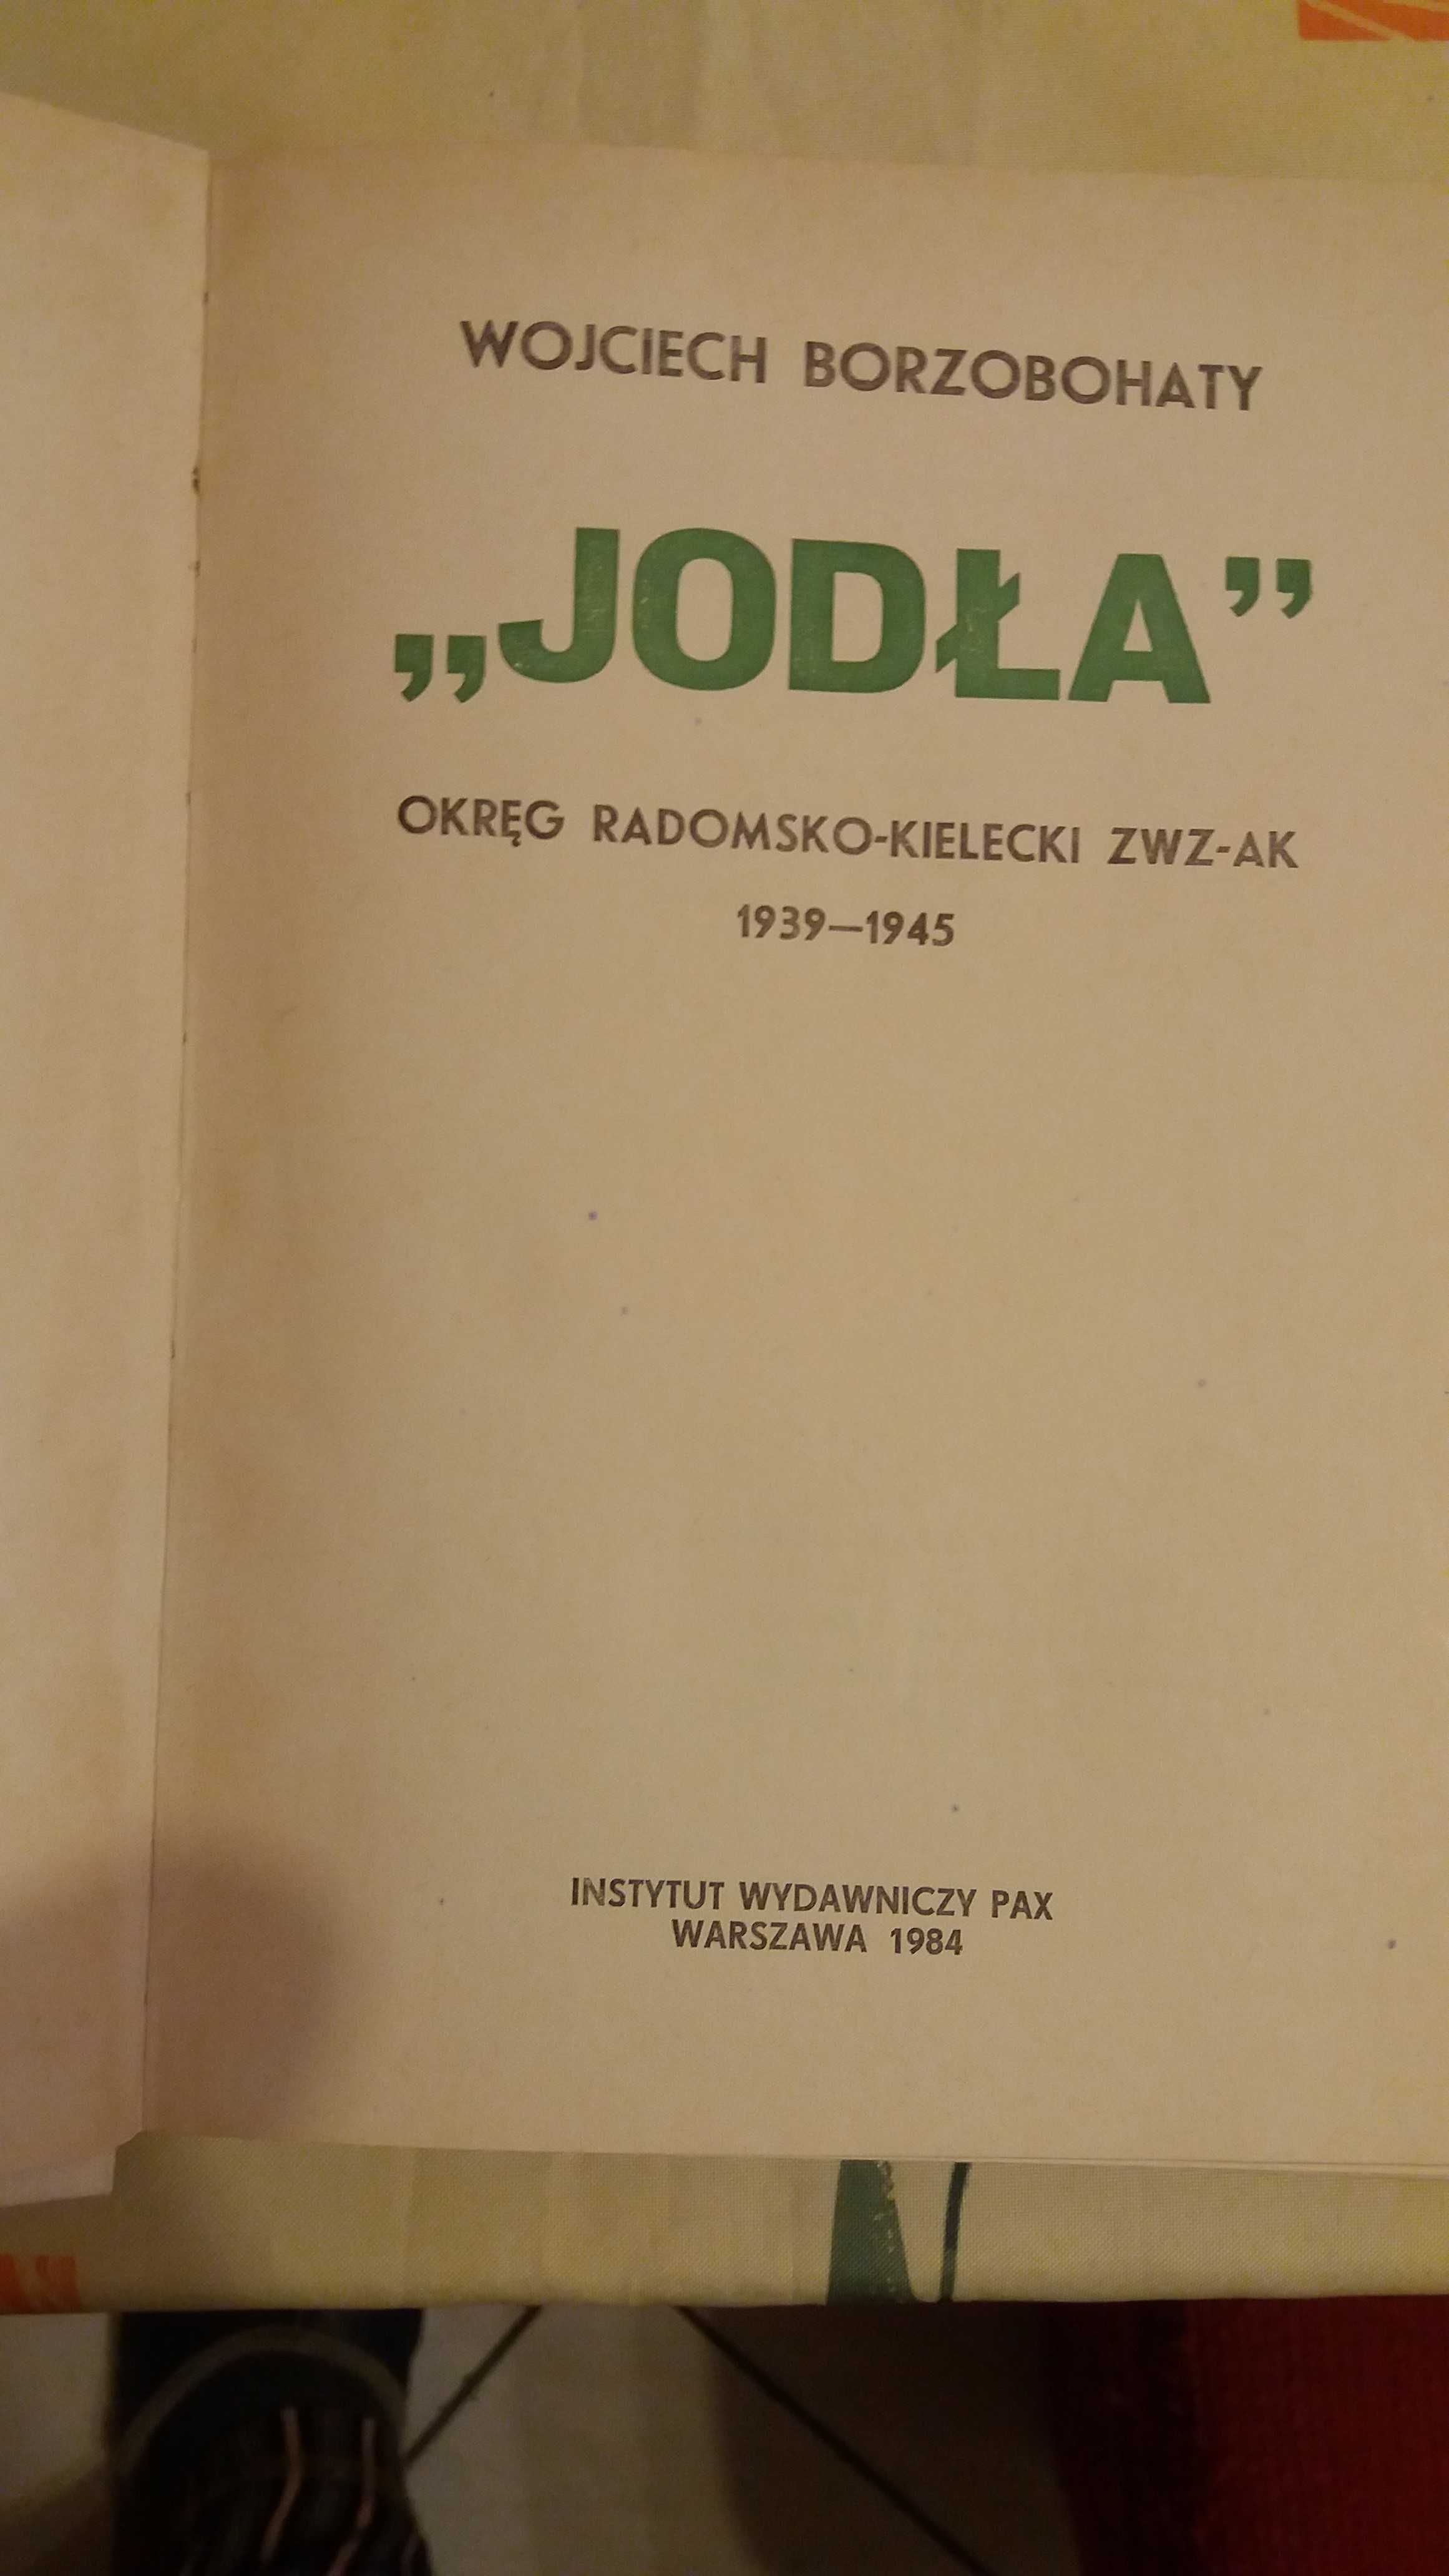 Wojciech Borzobohaty Jodła